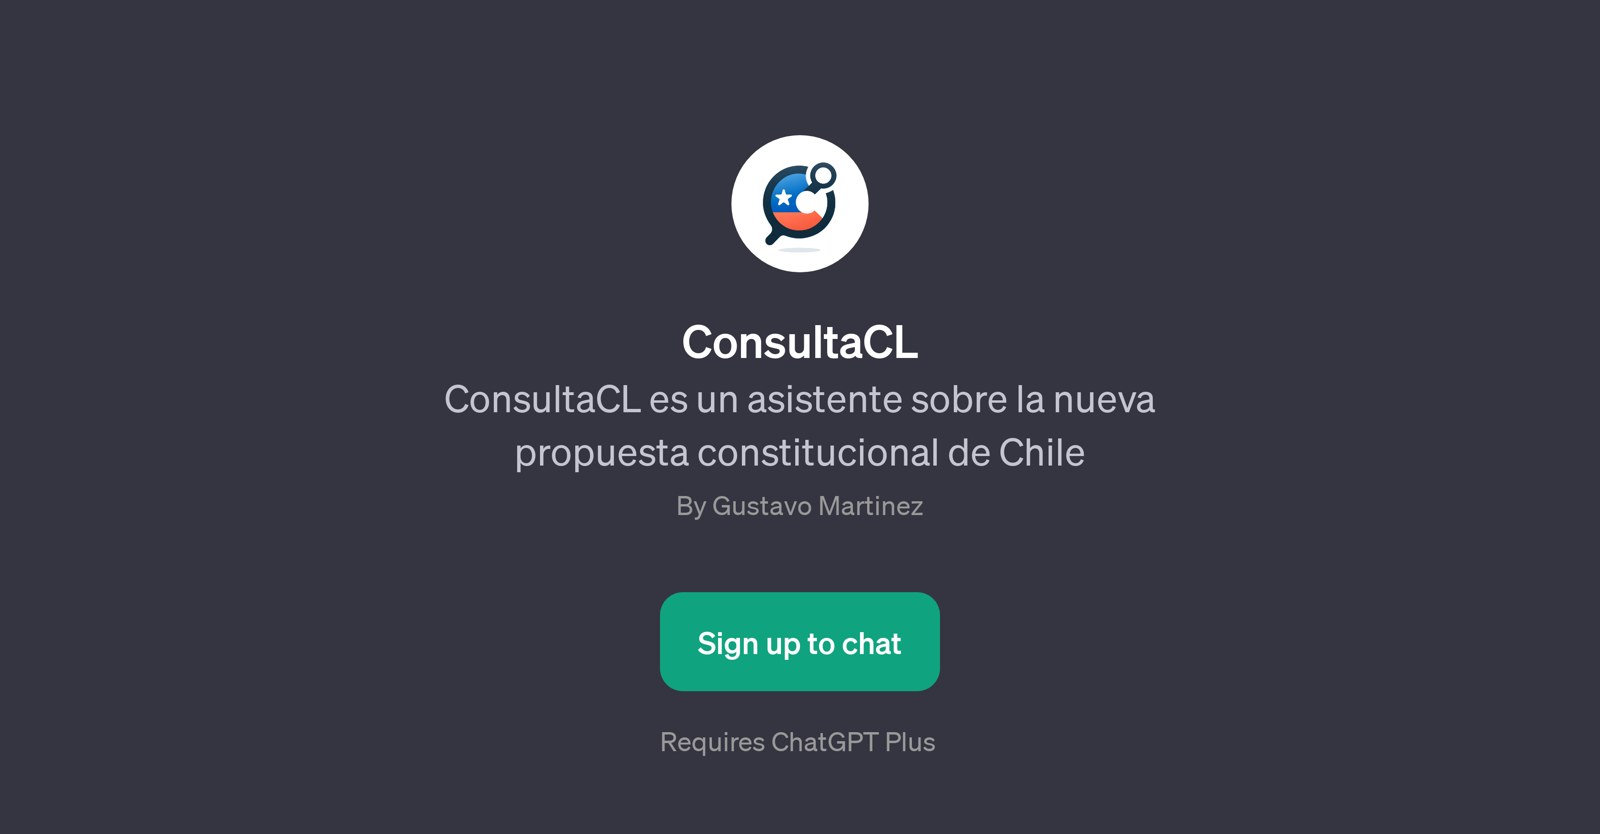 ConsultaCL website